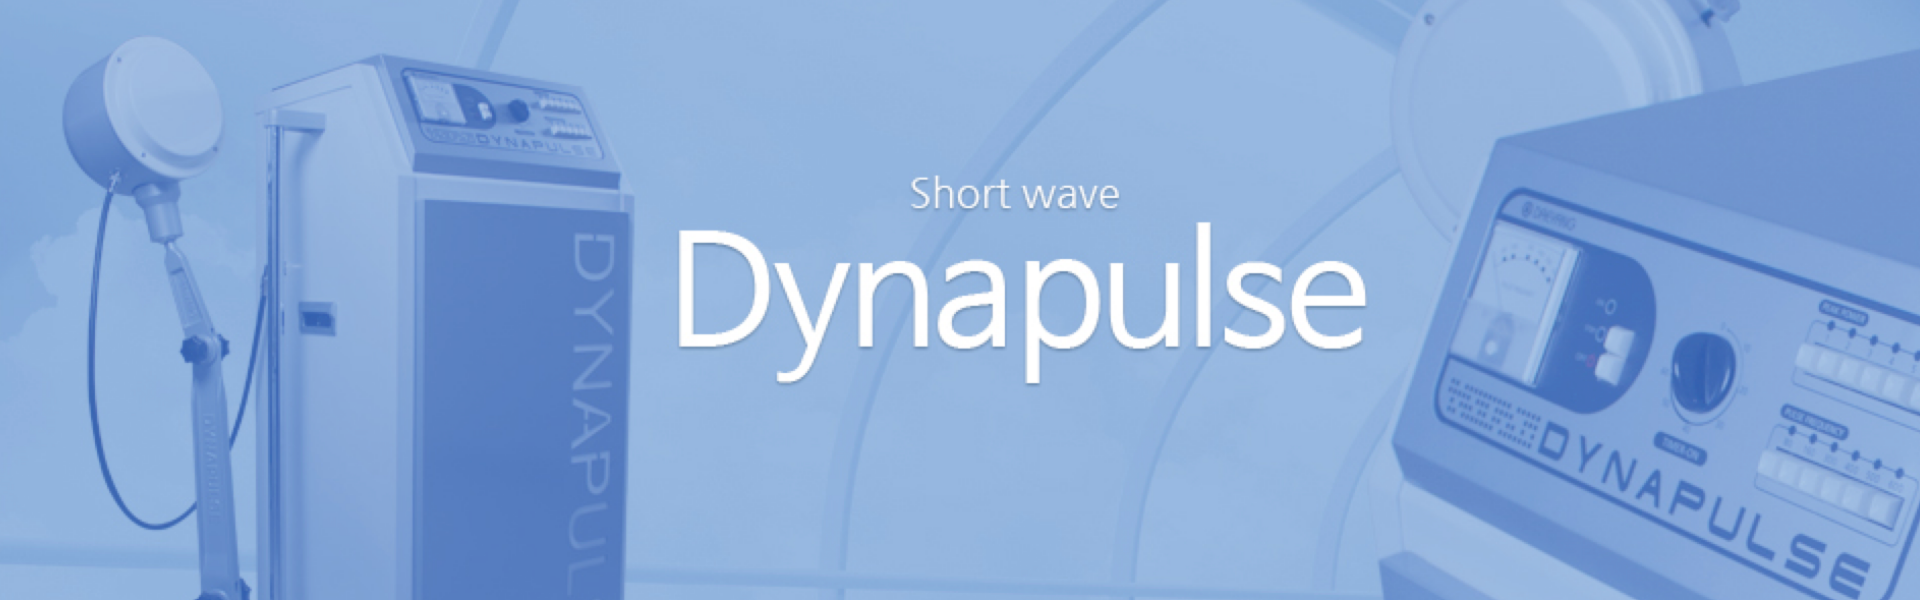 Dynapulse